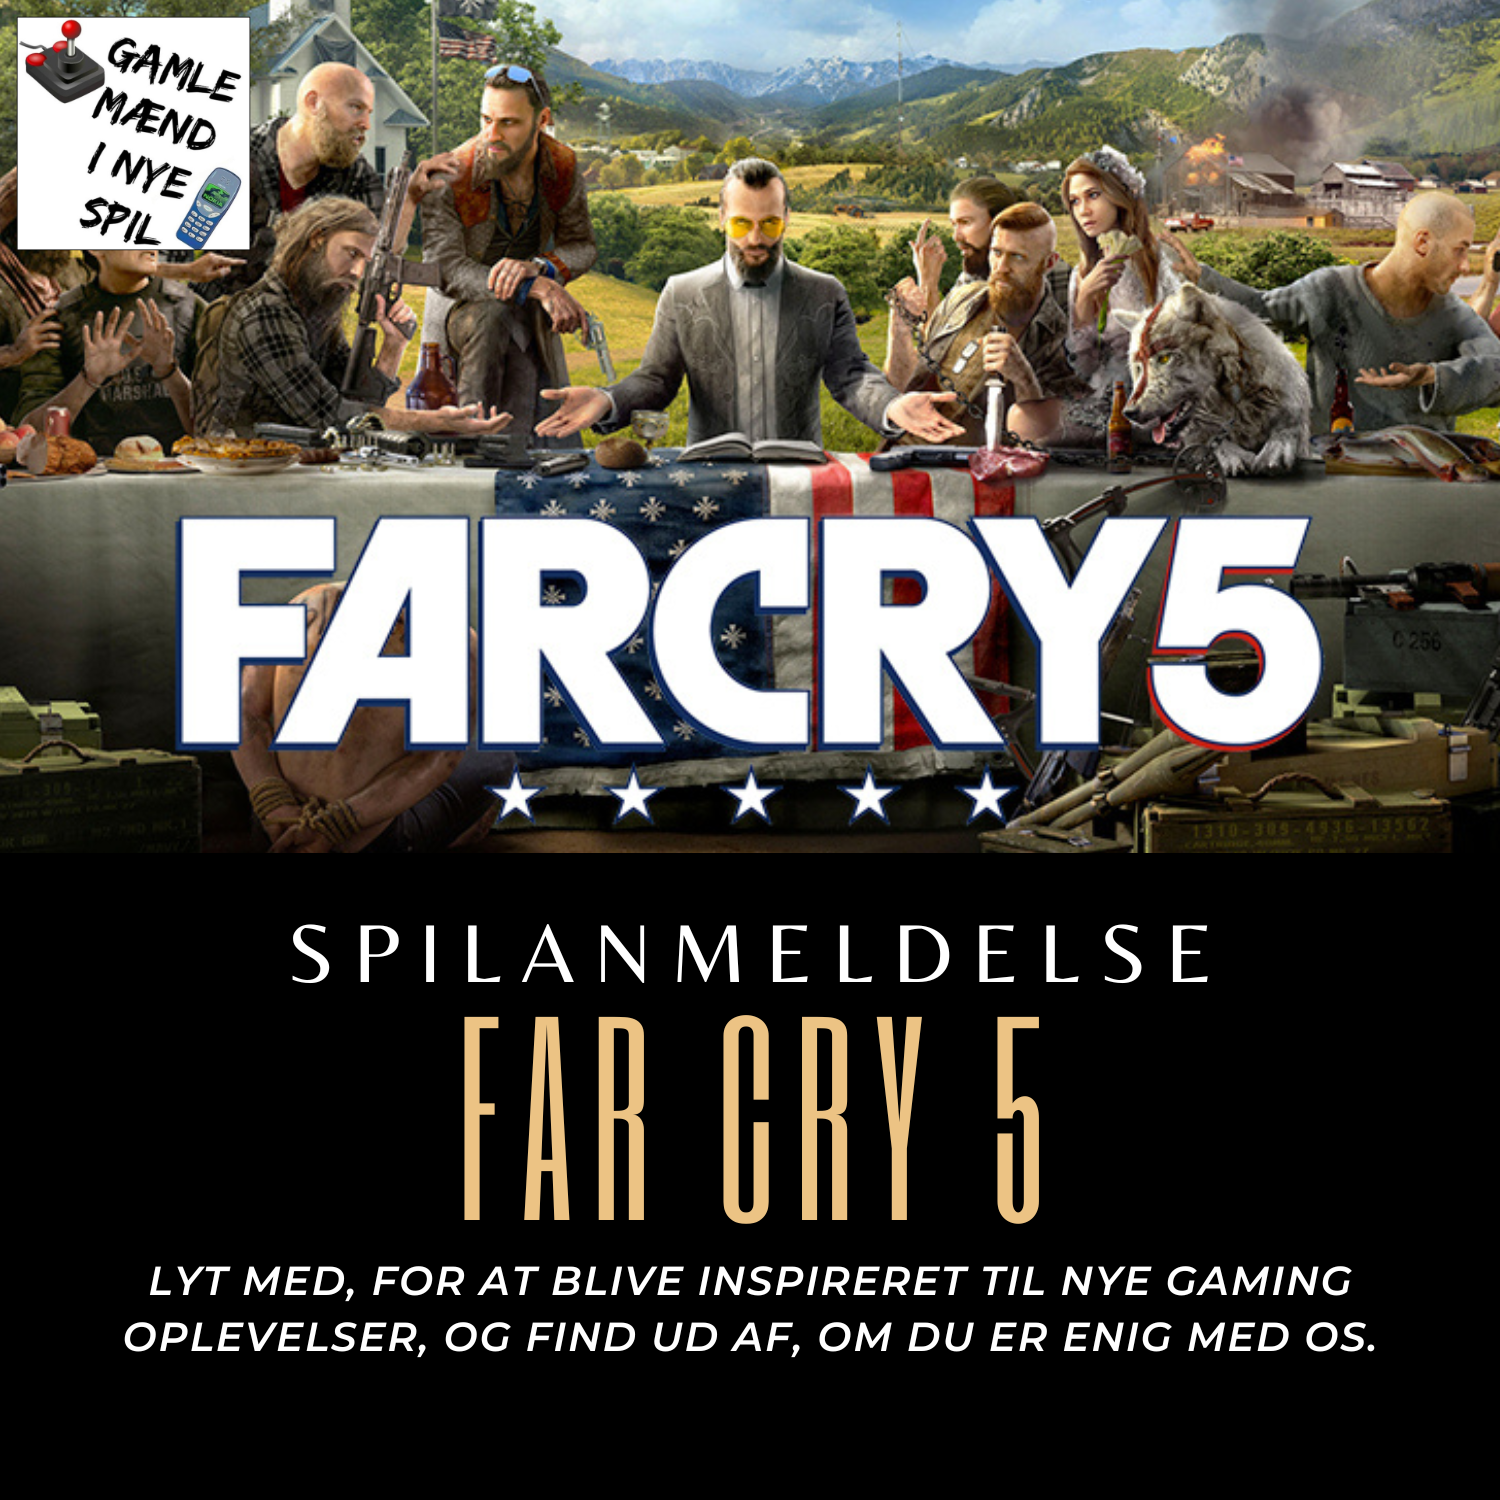 Far Cry 5 - Spilanmeldelse af et spil, hvor der kæmpes mod en stræk troende sekt